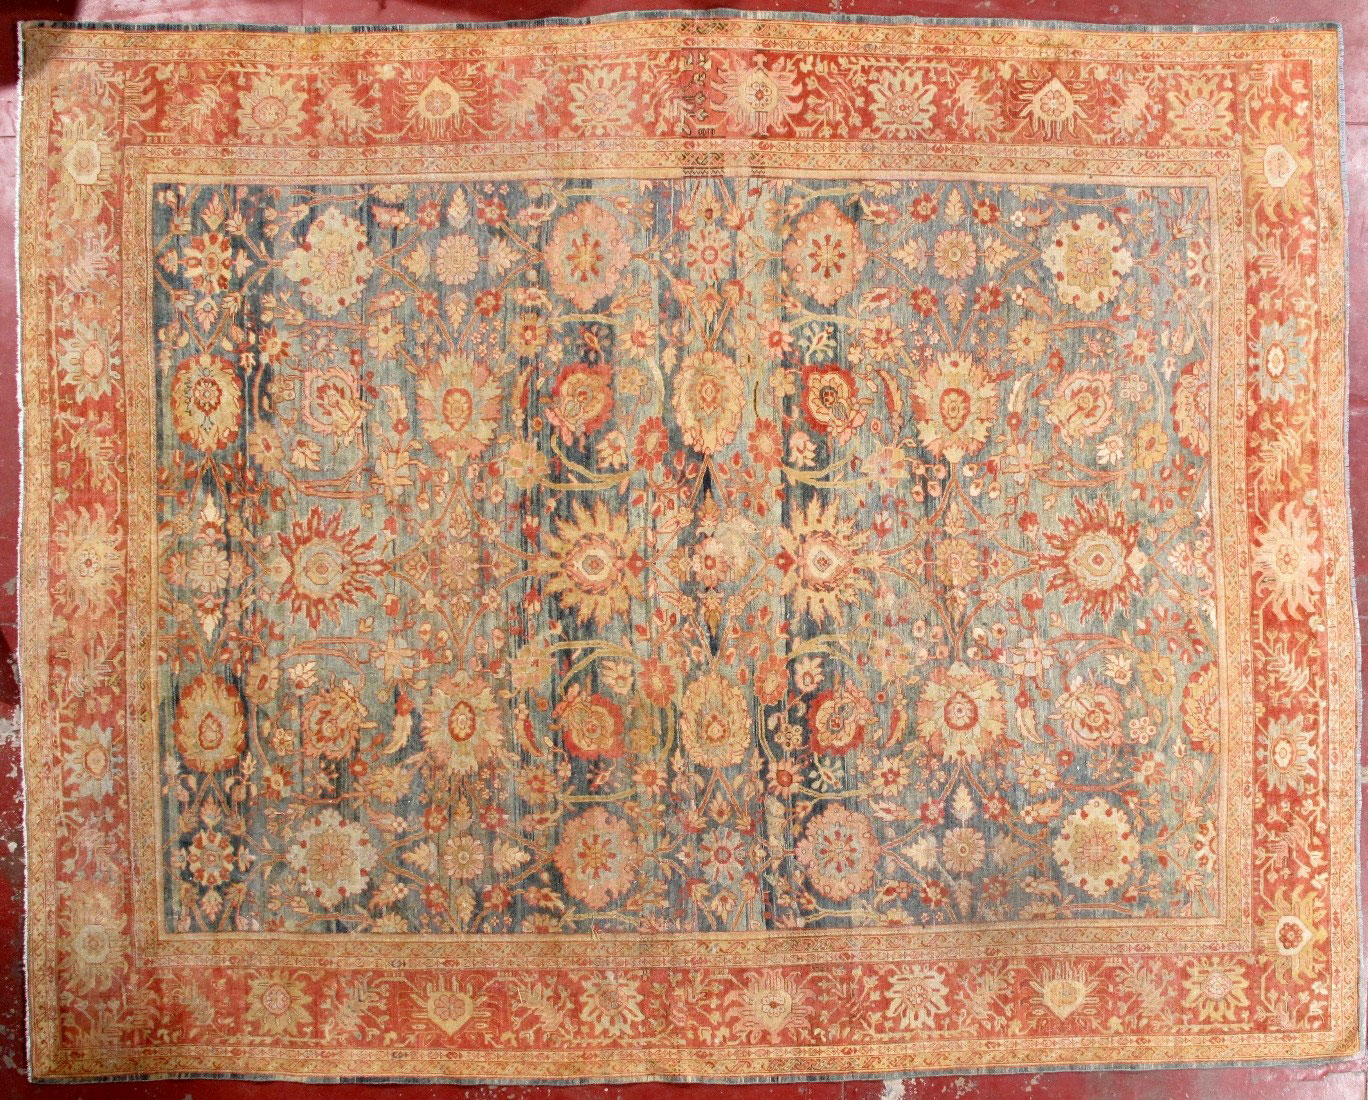 Antique sultan abad Carpet - # 51973